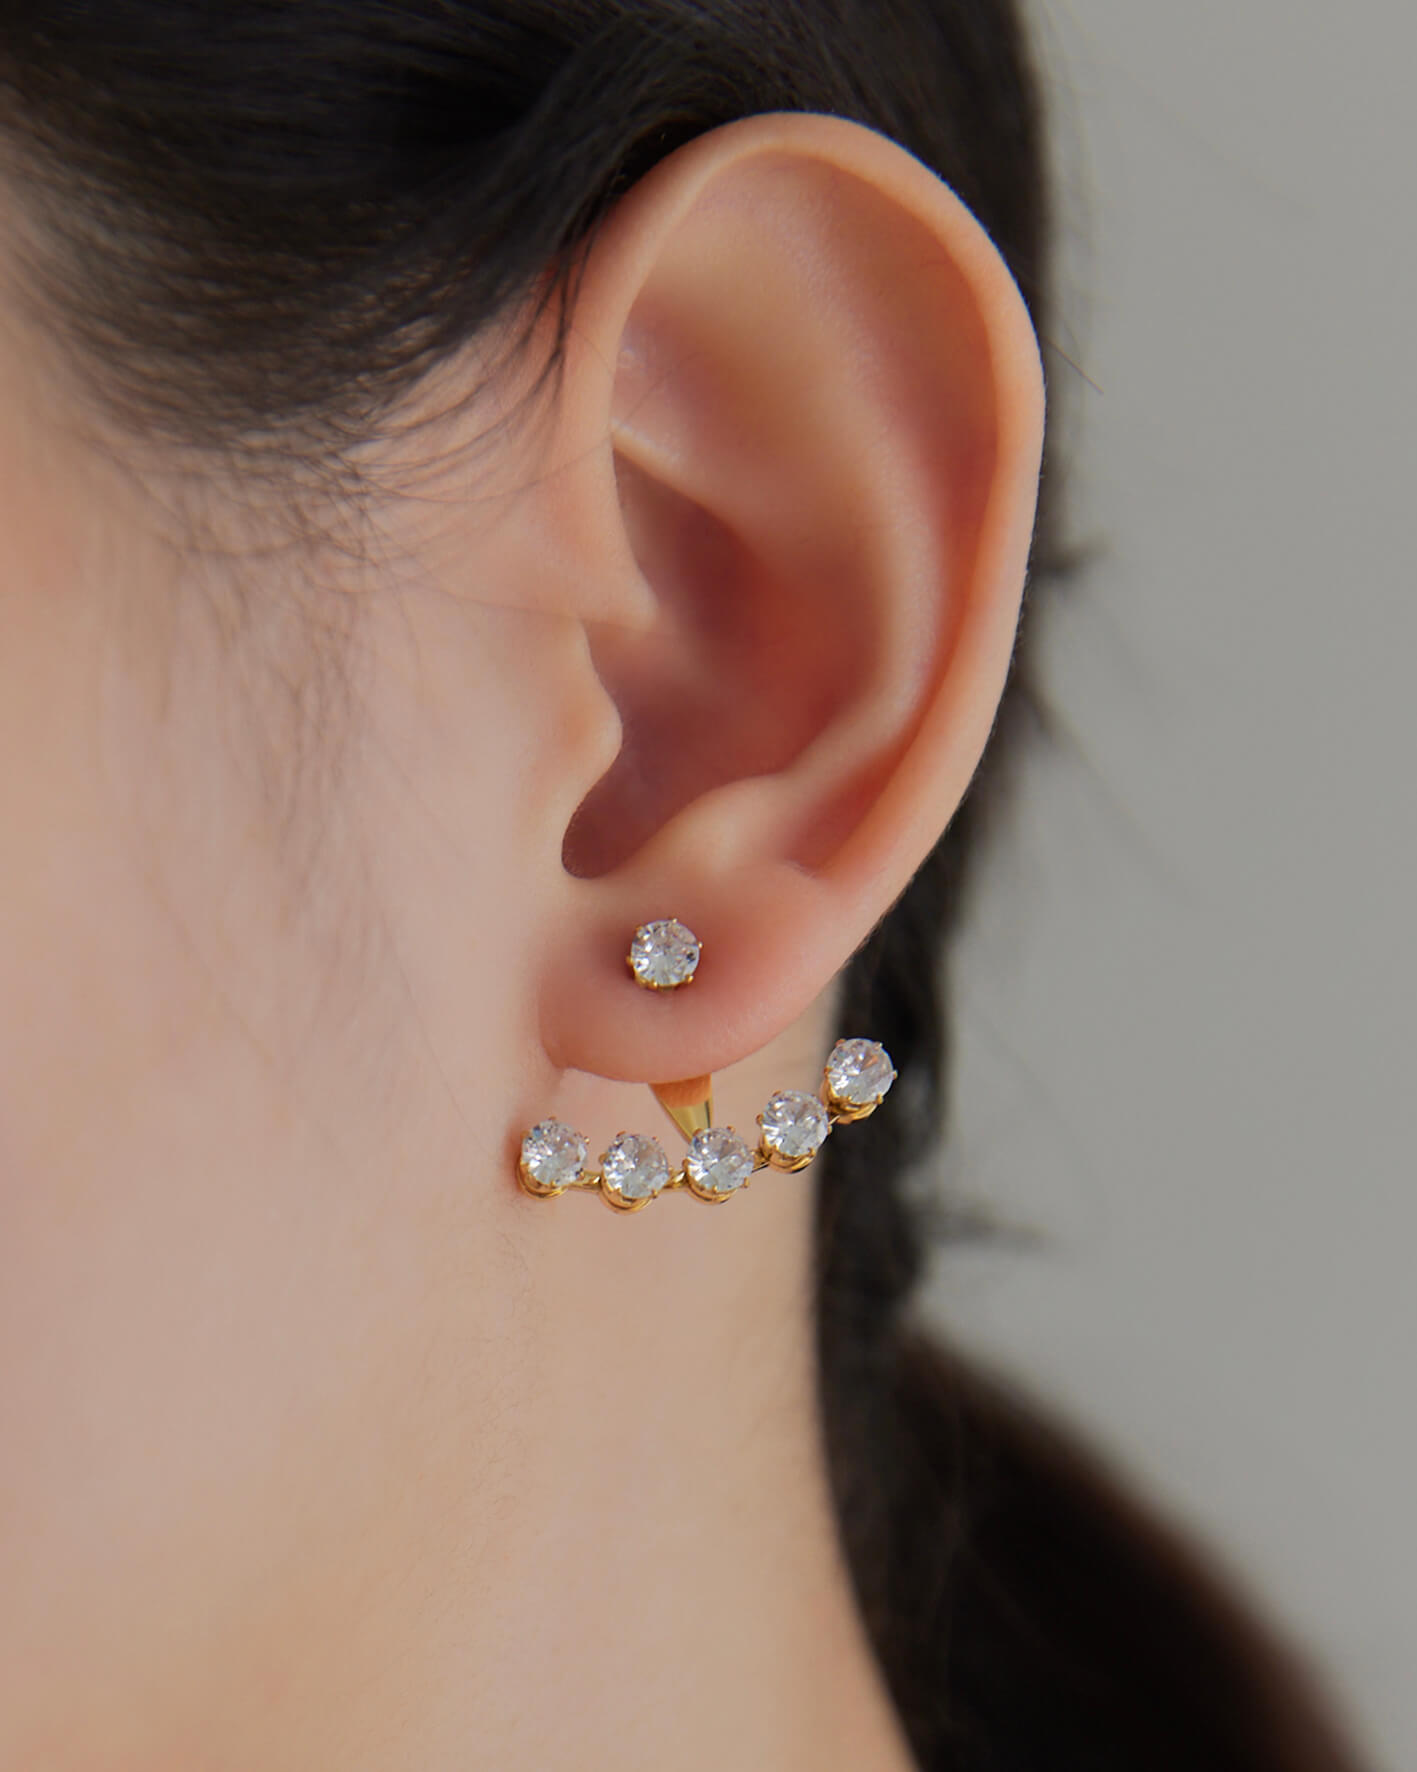 Eco安珂,韓國飾品,韓國耳環,耳針式耳環,排鑽耳環,氣質耳環,鑽耳環